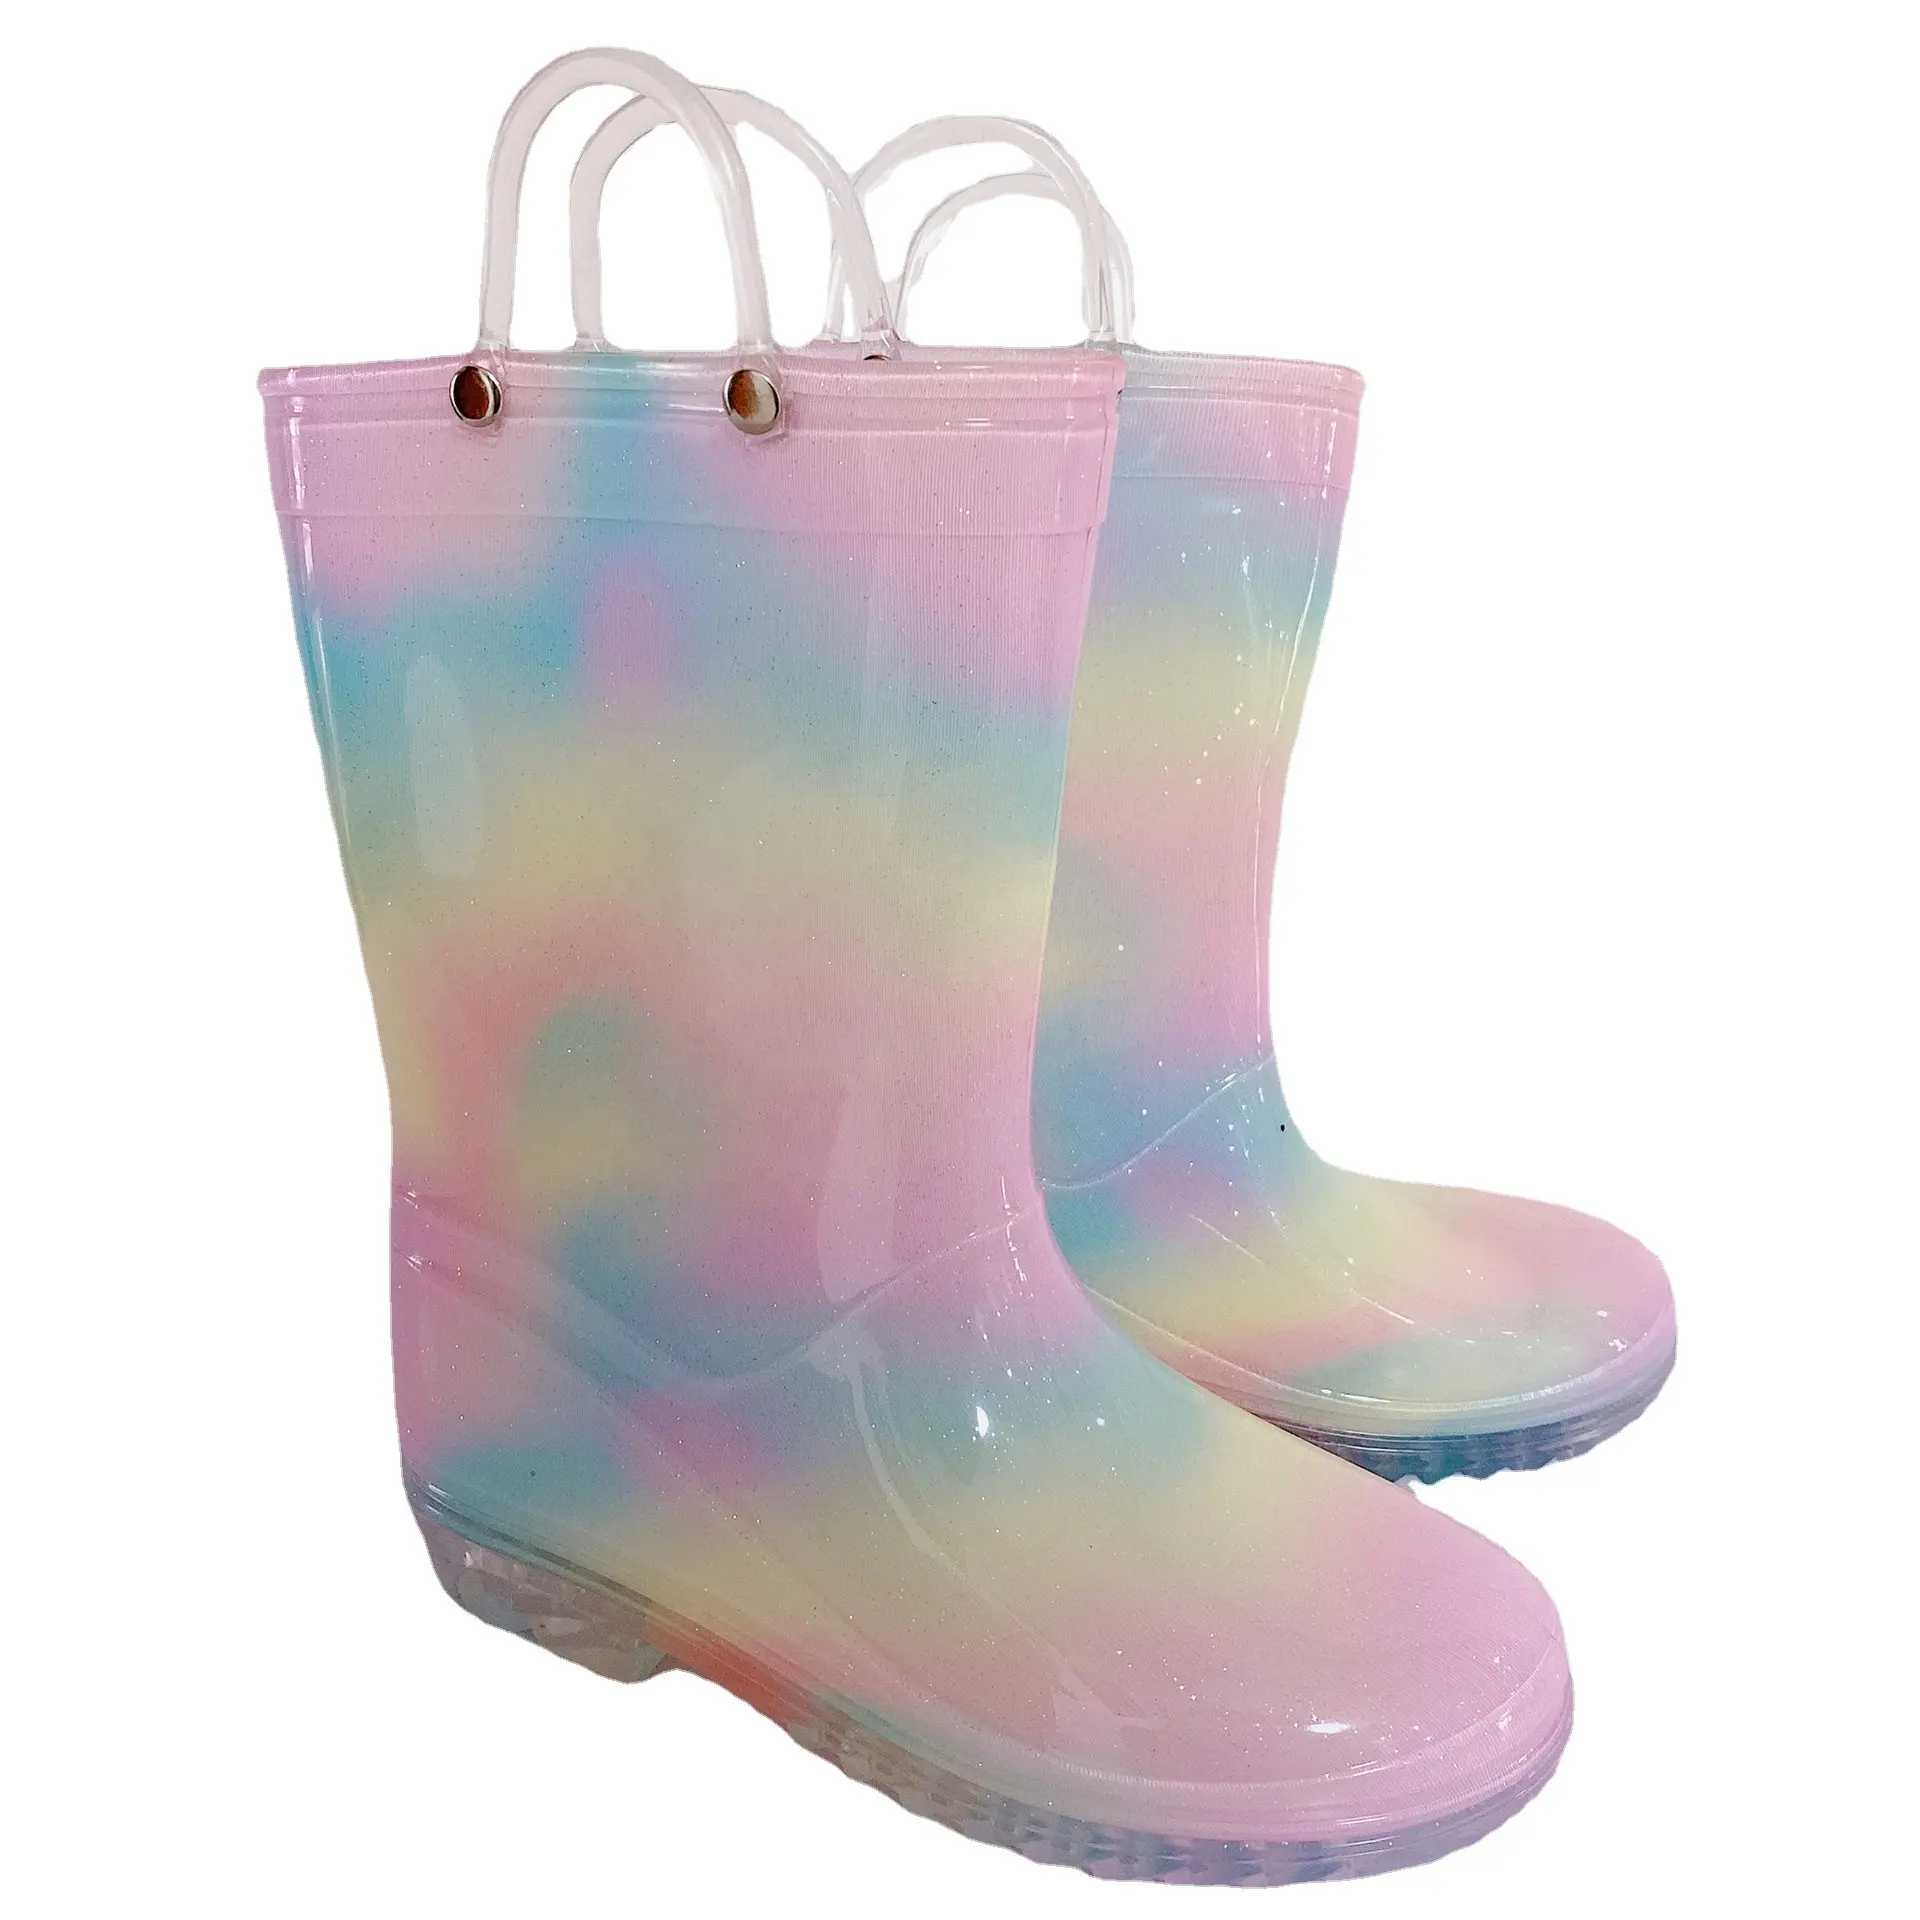 รองเท้าบูทยาง PVC กันฝนเด็กมีหูจับ,รองเท้าบูทหลากสีรองเท้าบูทกันฝนใช้ซ้ำได้ขายส่ง